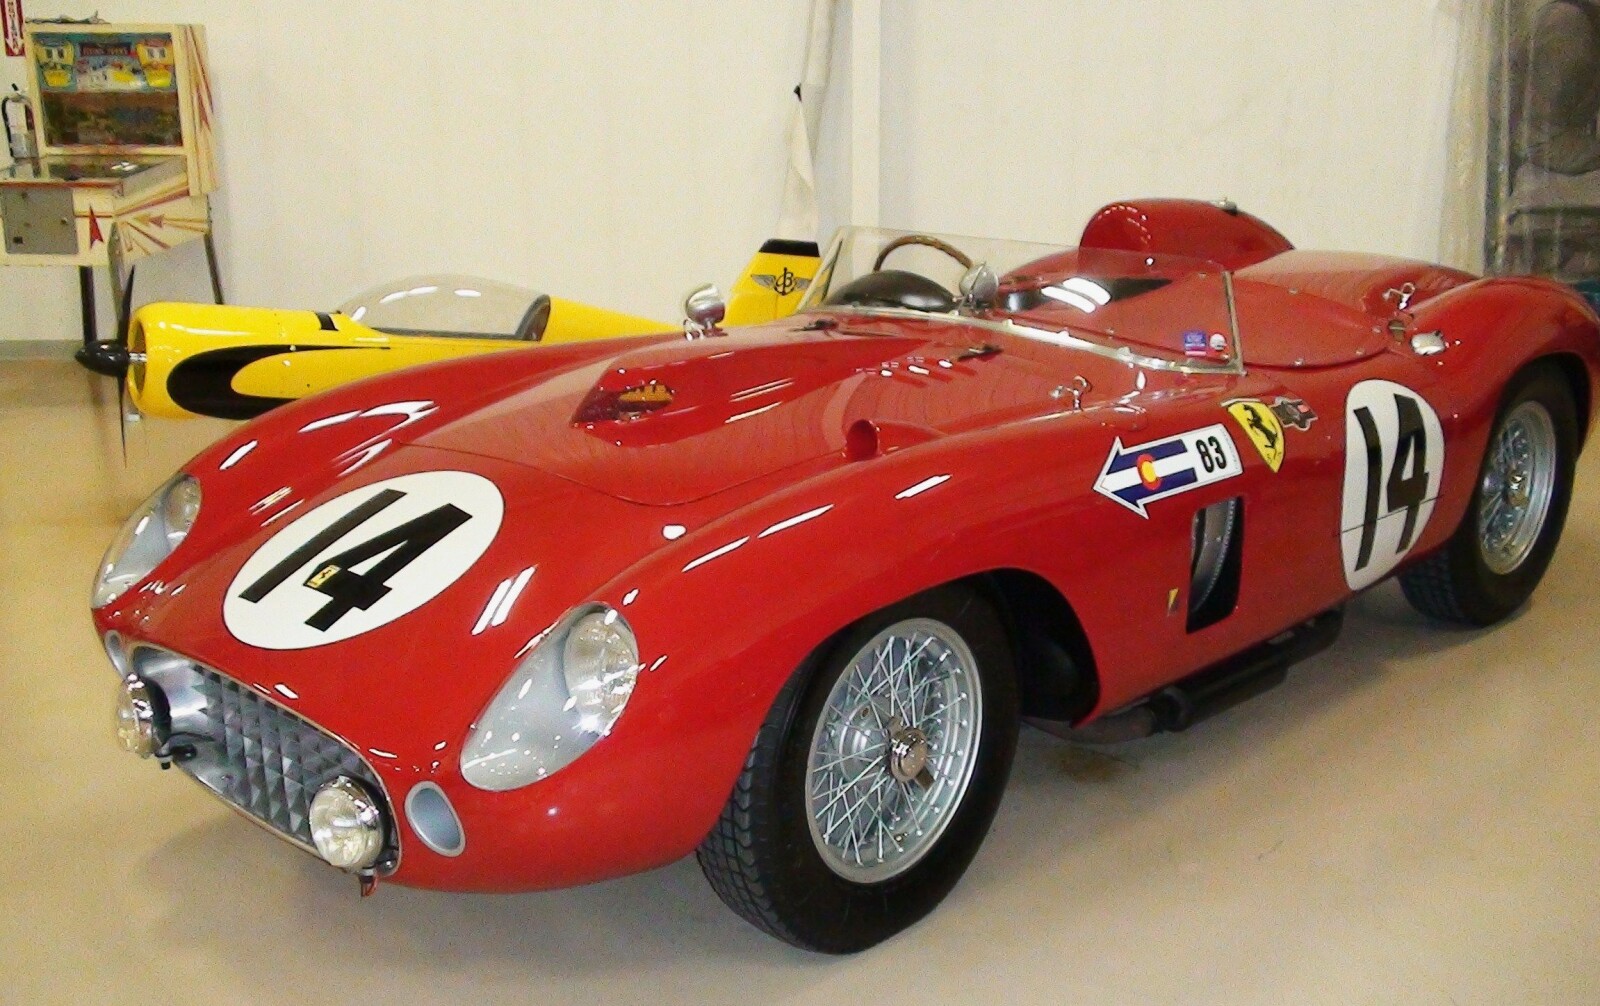 <b>SPESIELL BIL:</b> En slik Ferrari ble spesiallaget til racinglegenden Juan Manuel Fangio.